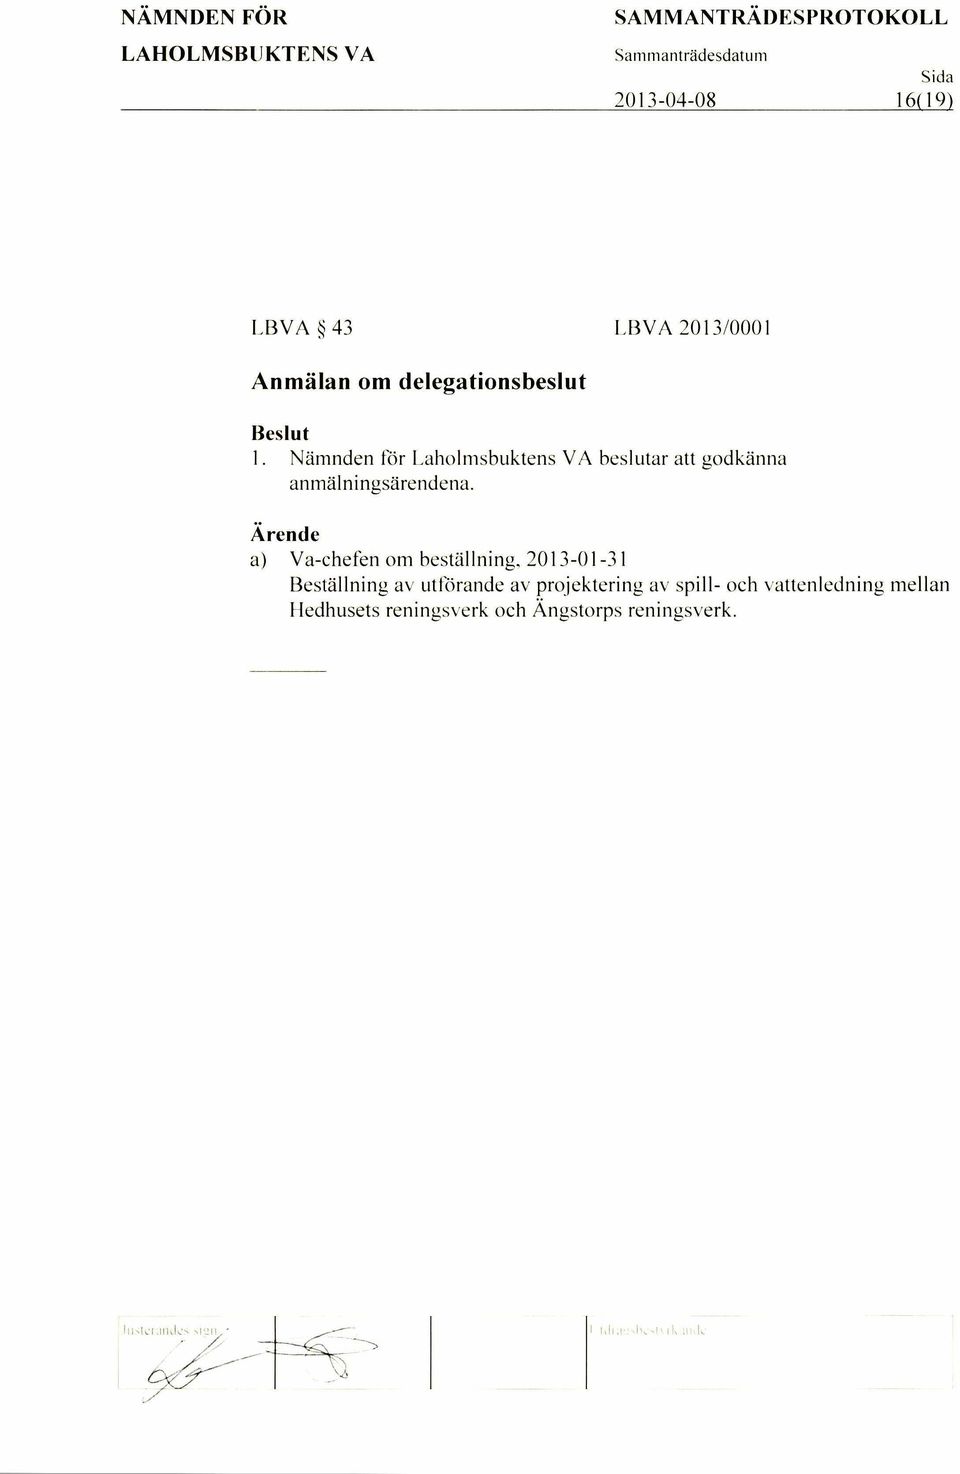 a) Va-chefen om bestallning, 2013-01-31 Bestallning av utforande av